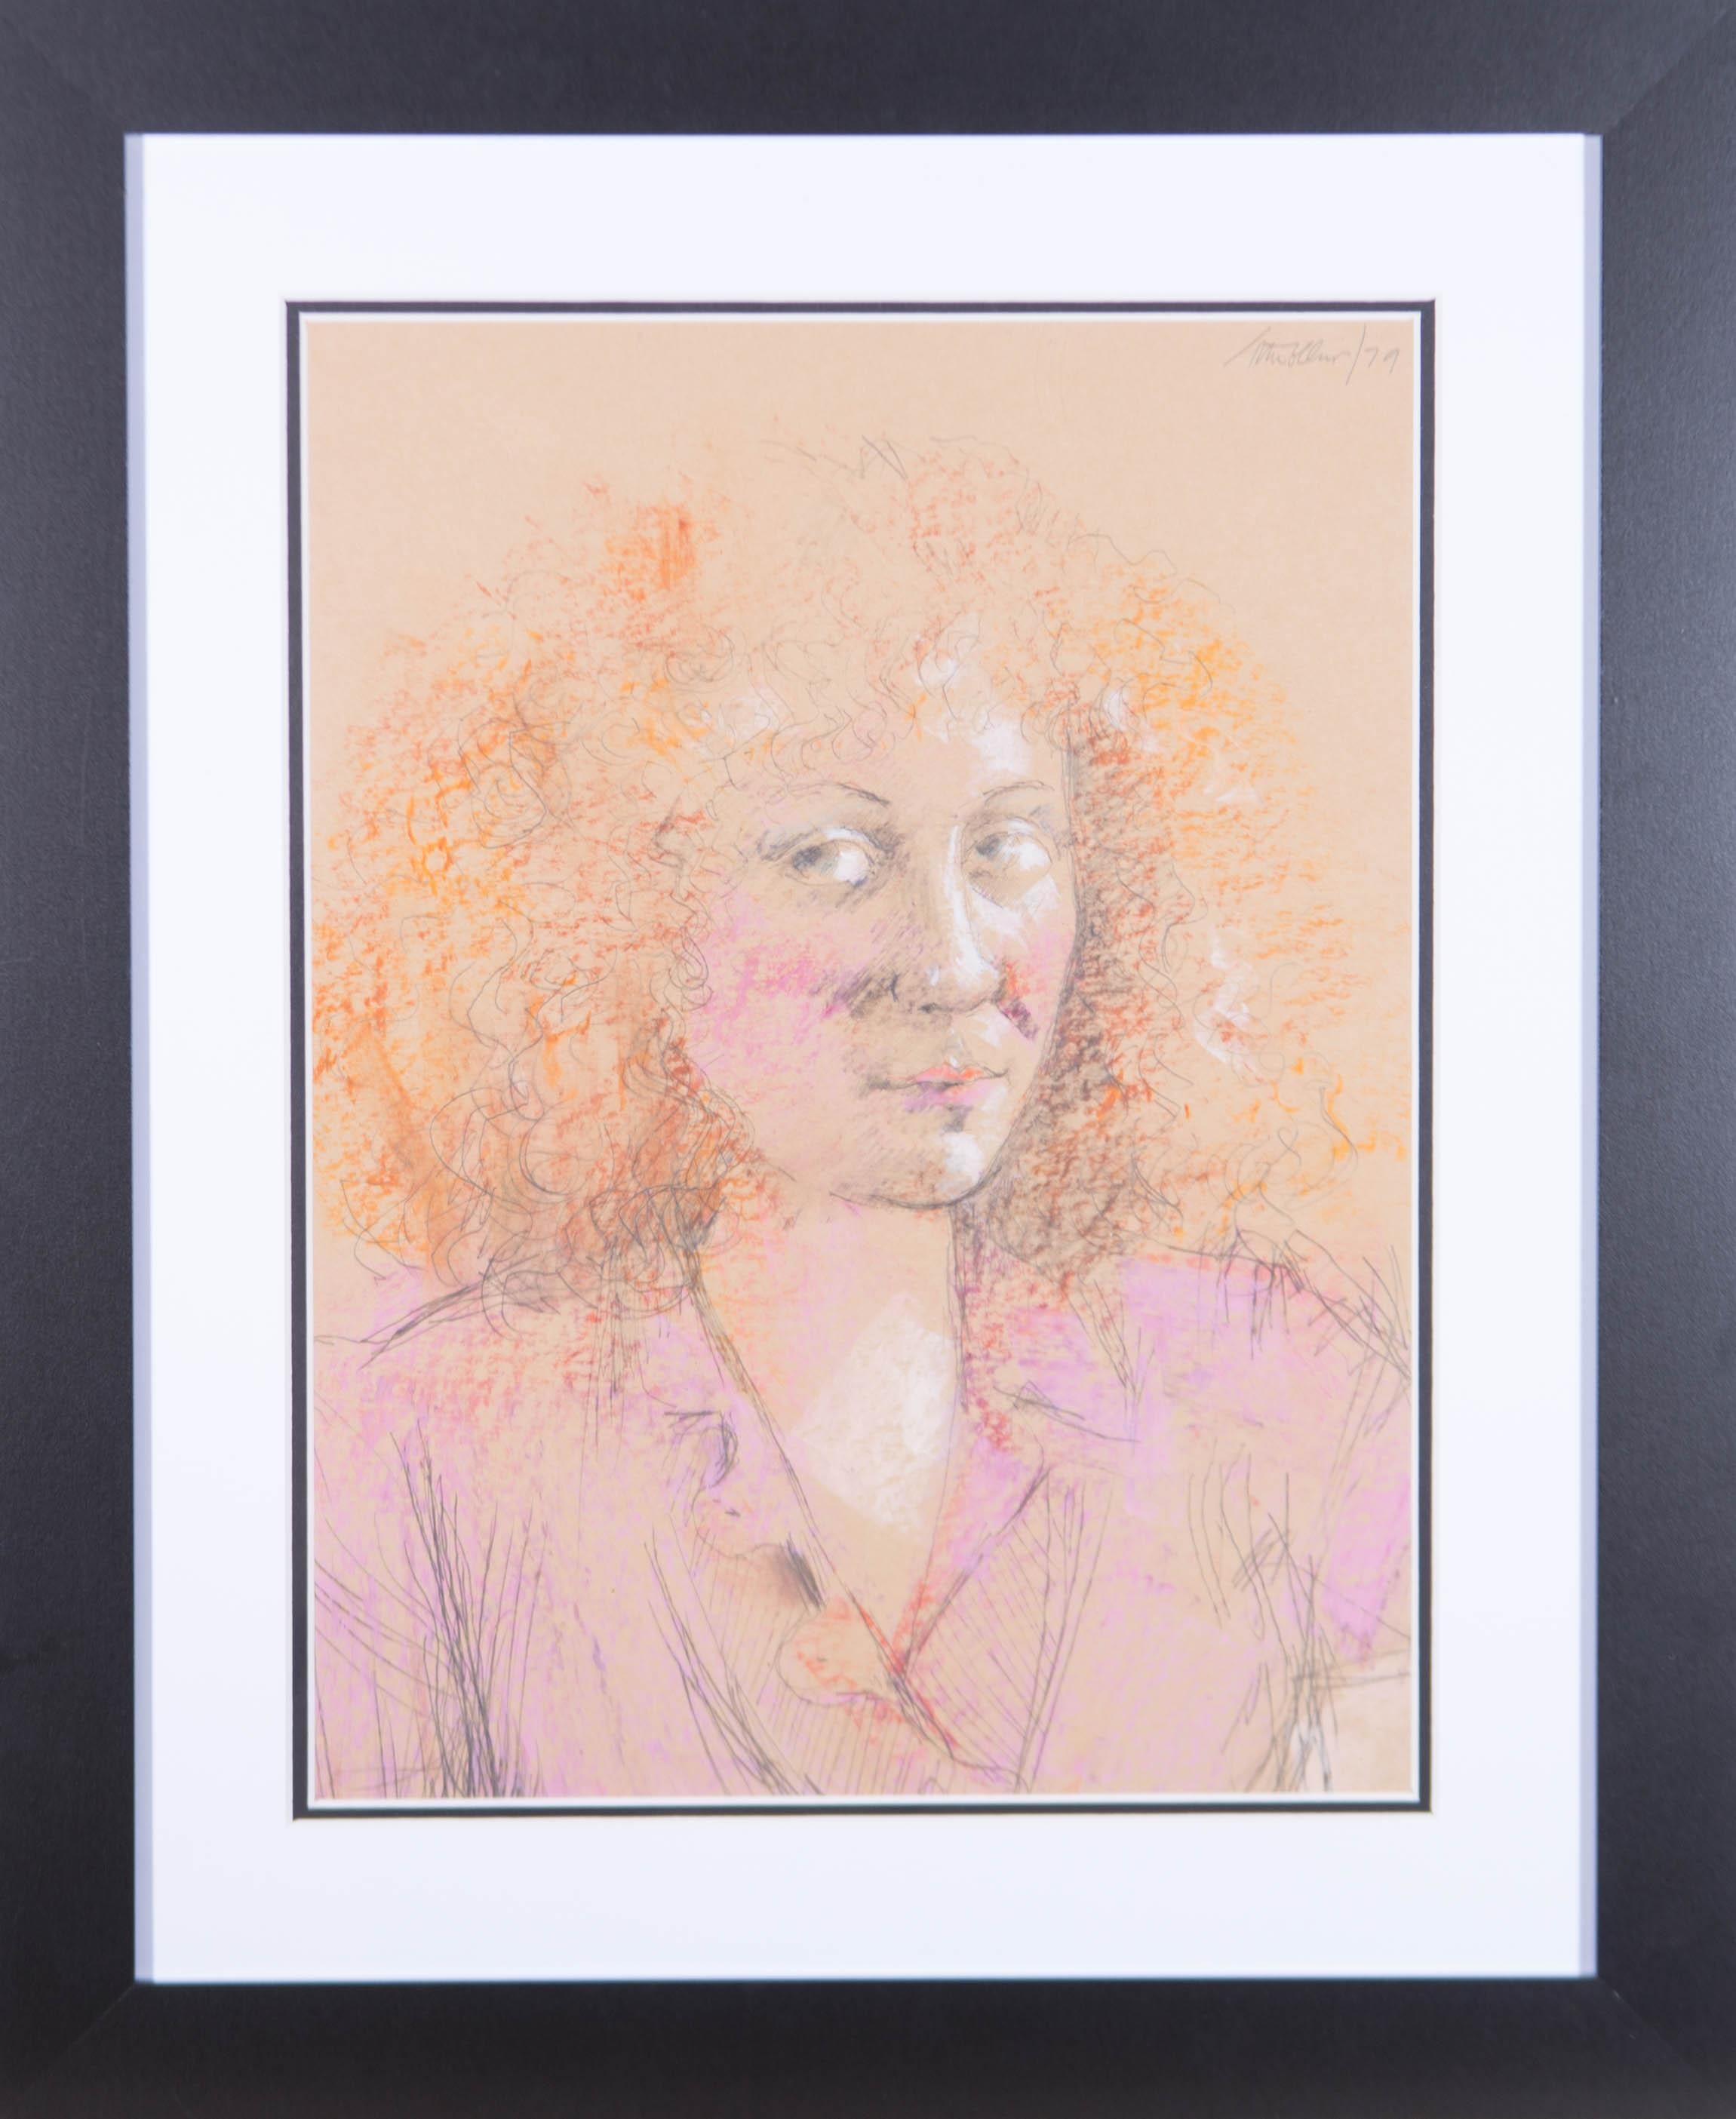 Un magnifique portrait de jeune femme réalisé par l'artiste britannique classé Peter Collins. Ici, il a saisi la beauté sans effort du modèle à l'aide d'un petit nombre de traits de crayon expressifs et de taches de couleur. Très bien présenté dans